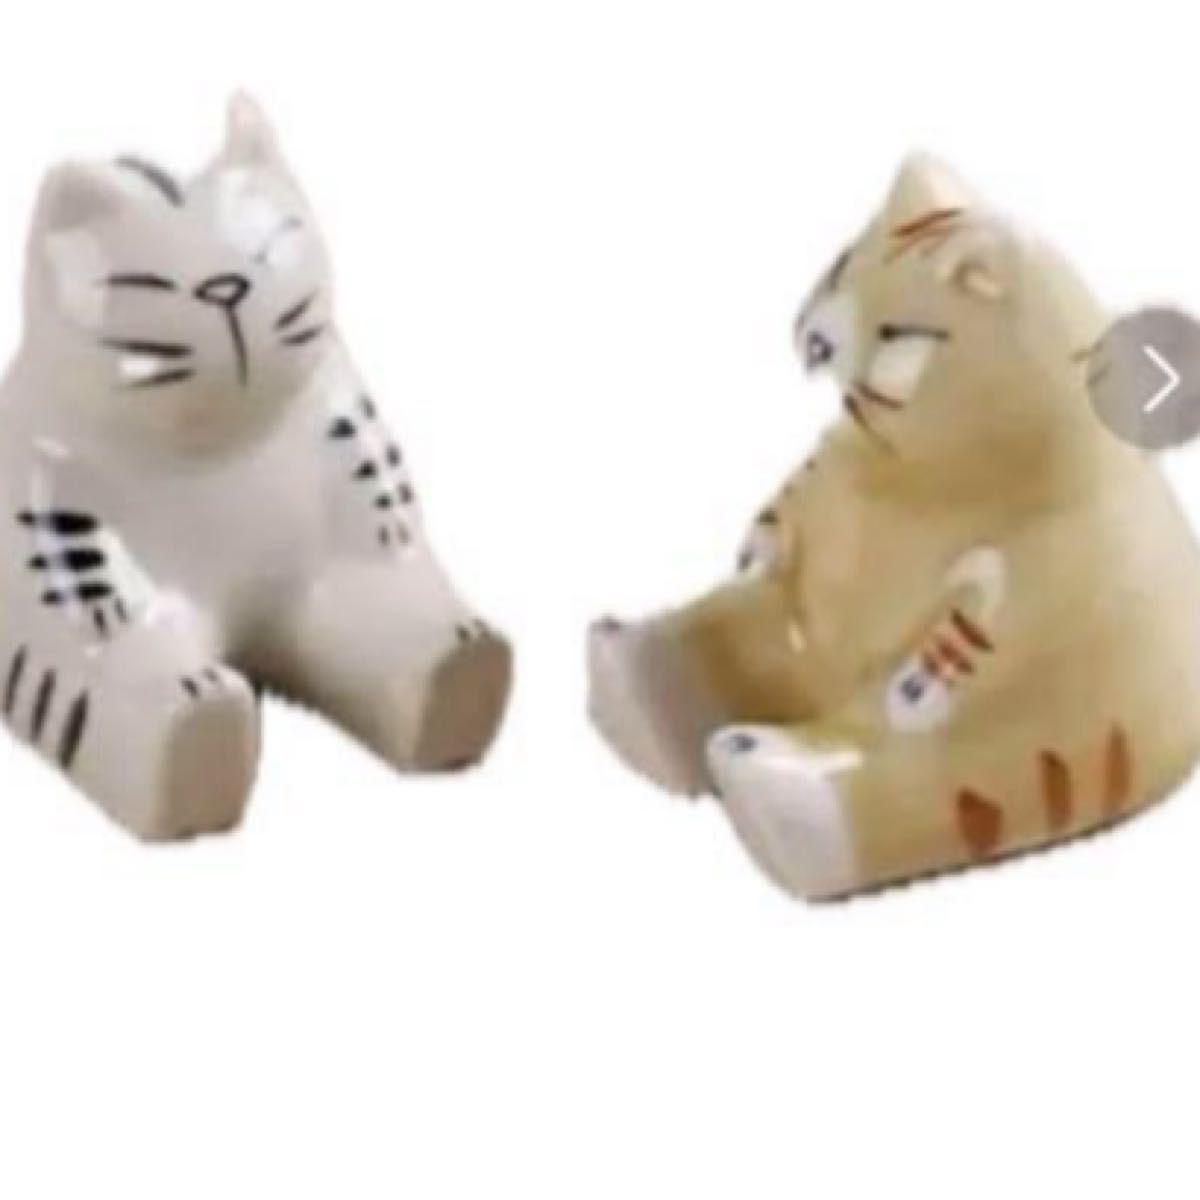 箸置き 陶器 ミニチュア 置物 陶器製 猫 置物 インテリア 陶器製 陶器